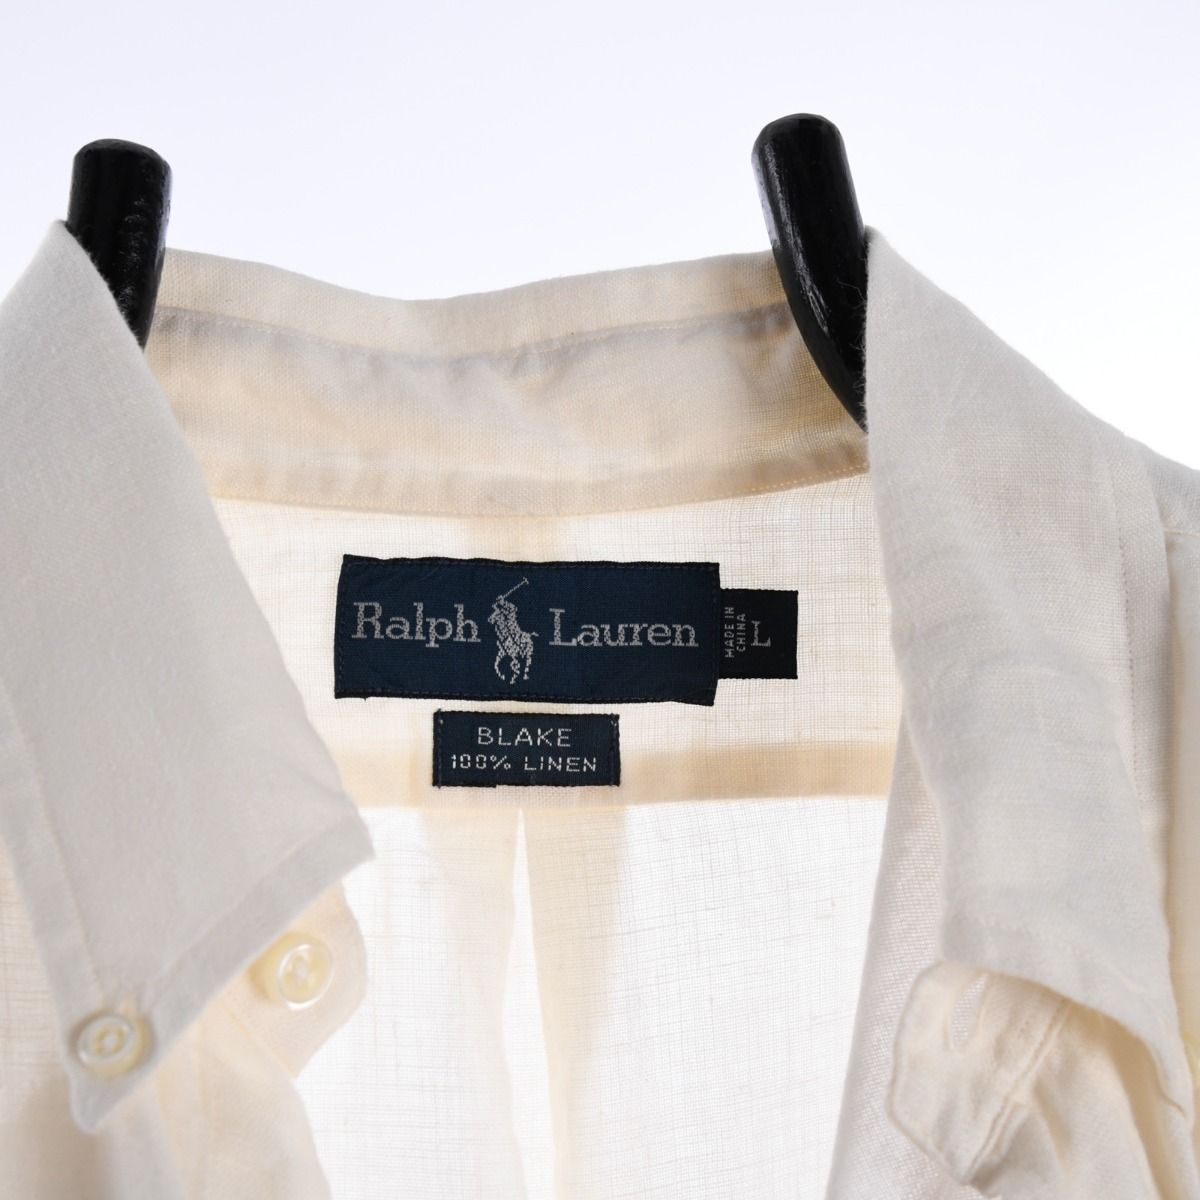 Ralph Lauren Blake Linen Shirt